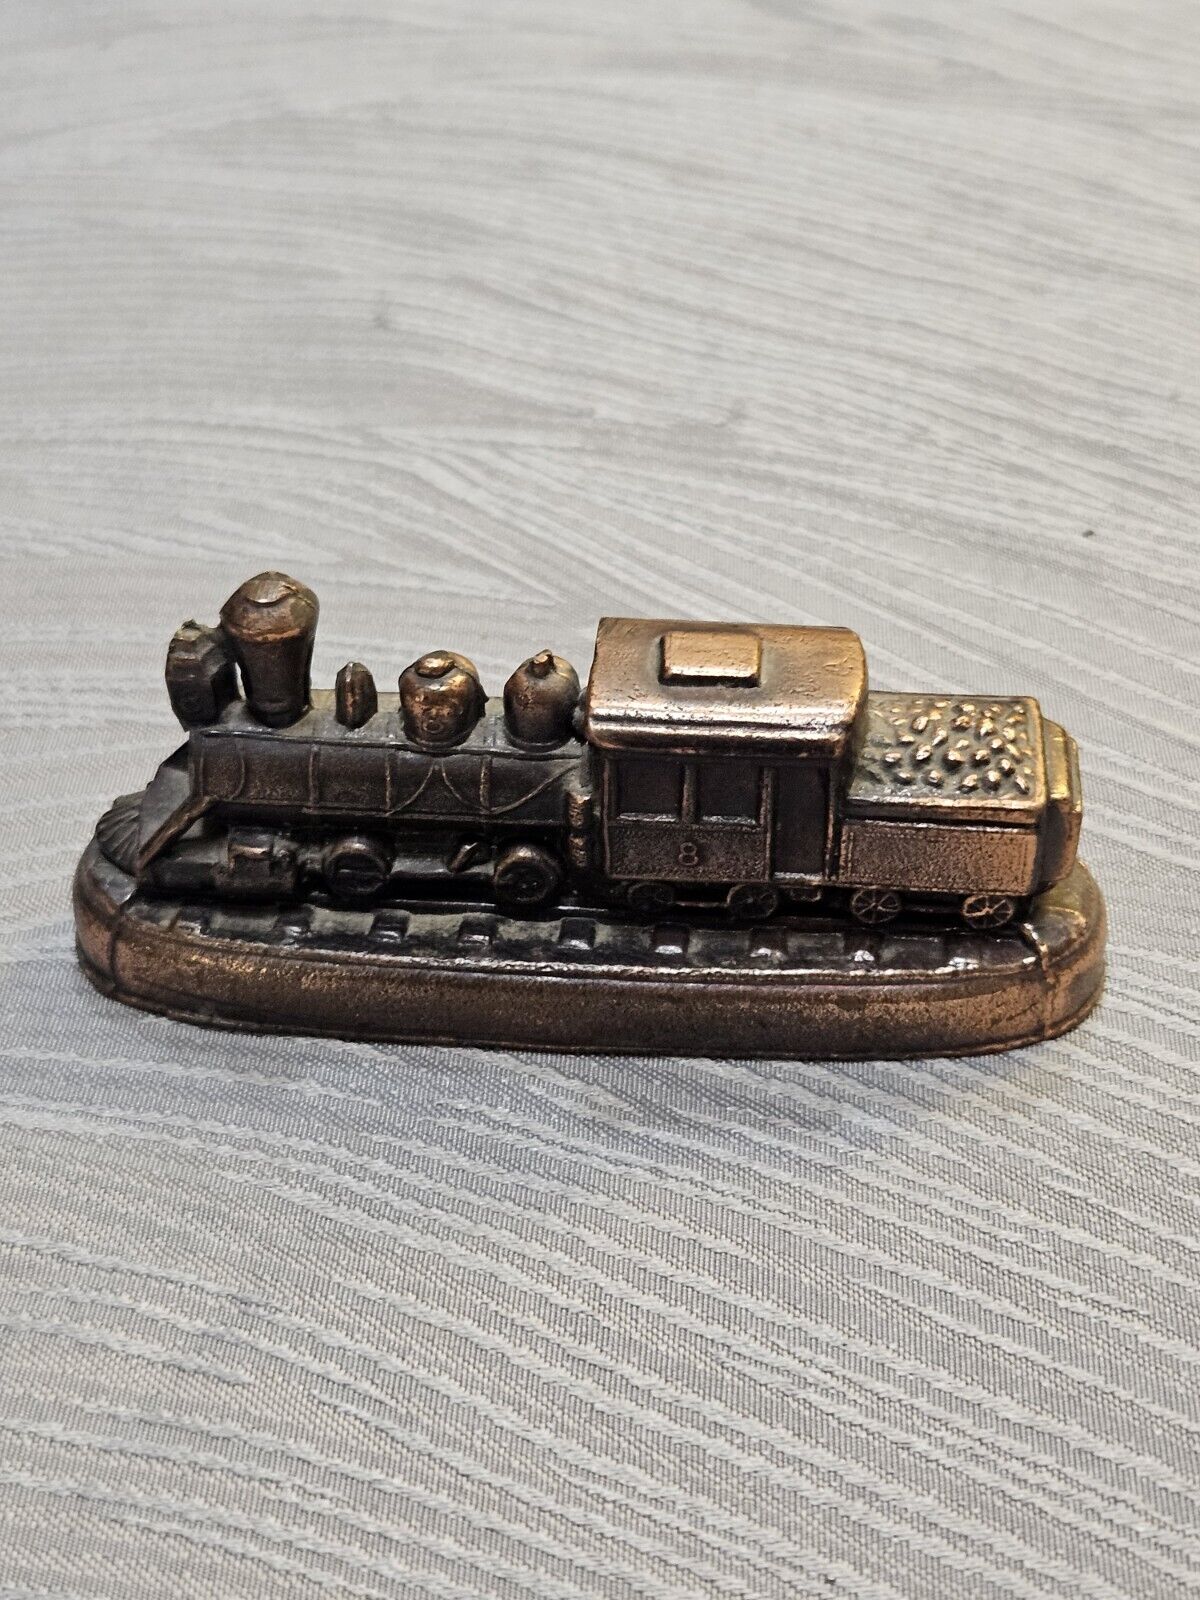 Antique Small Copper and Metal Train Desk Accessory Vintage Train